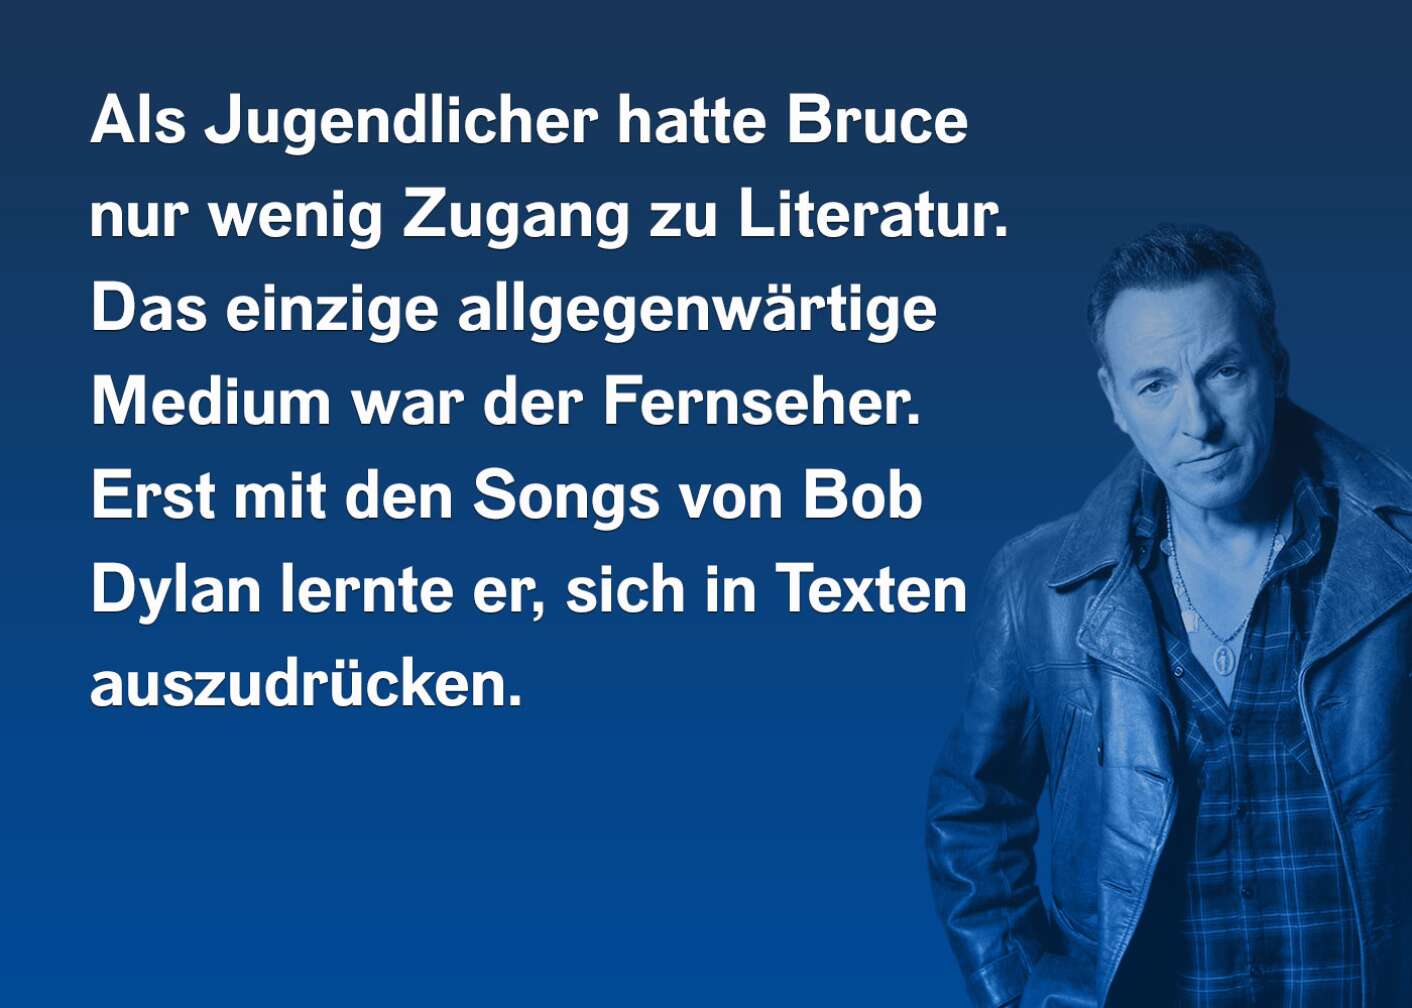 Als Jugendlicher hatte Bruce nur wenig Zugang zu Literatur. Das einzige allgegenwärtige Medium war der Fernseher. Erst mit den Songs von Bob Dylan lernte er, sich in Texten auszudrücken.